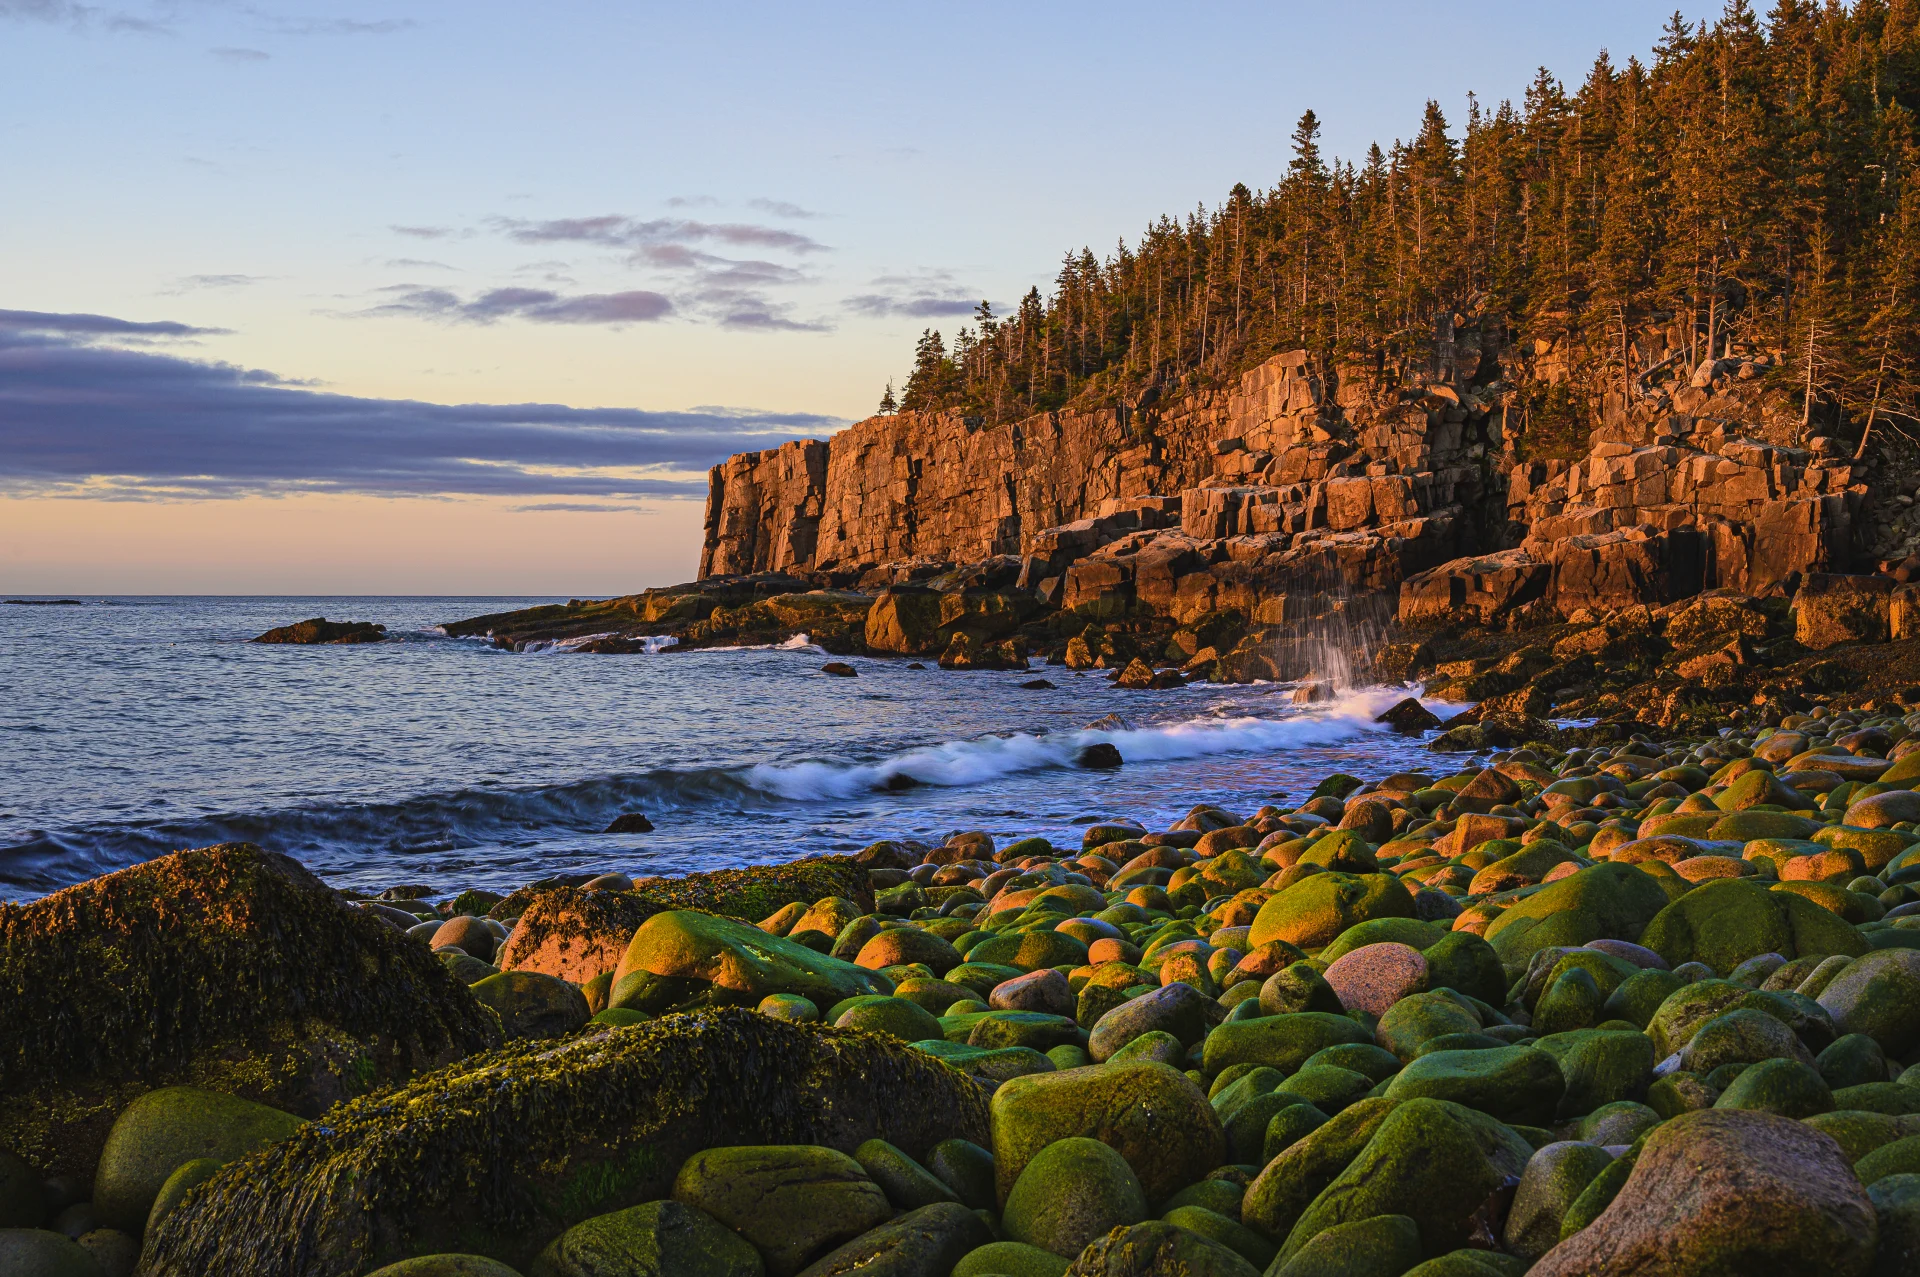 Fra Halifax til Boston – historie, sjømat og naturreservater